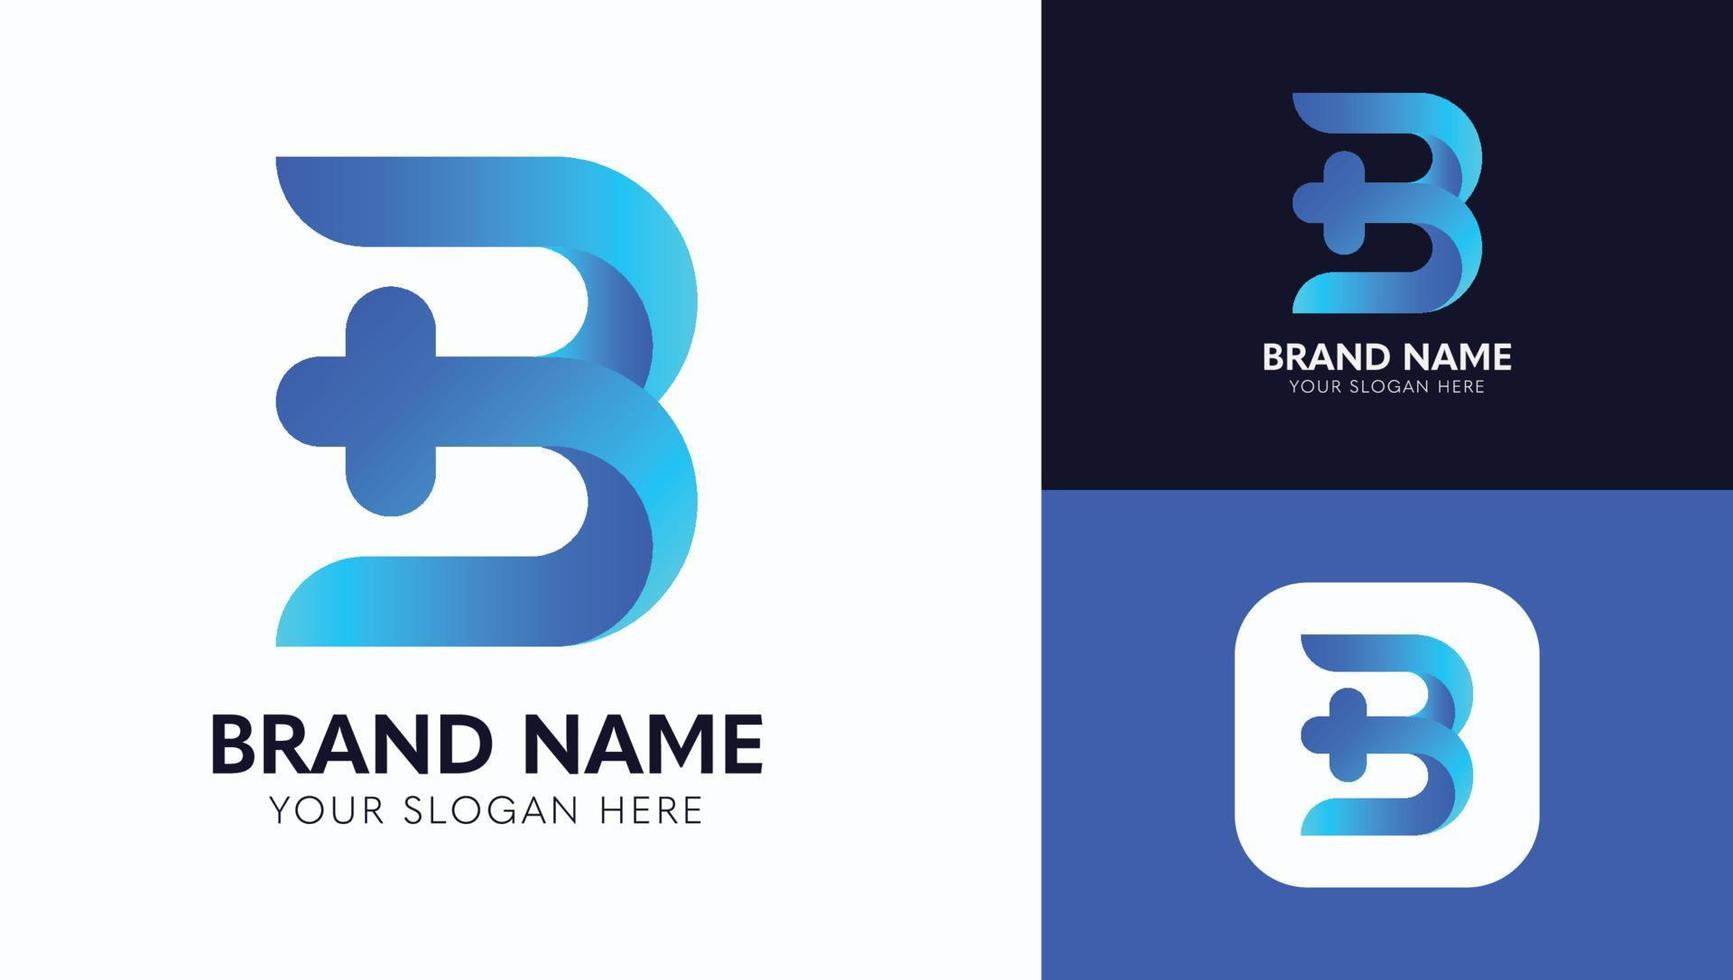 buchstabe b logo design, markenidentität logos vektor, modernes logo, logo entwirft vektorillustrationsvorlage pro vektor